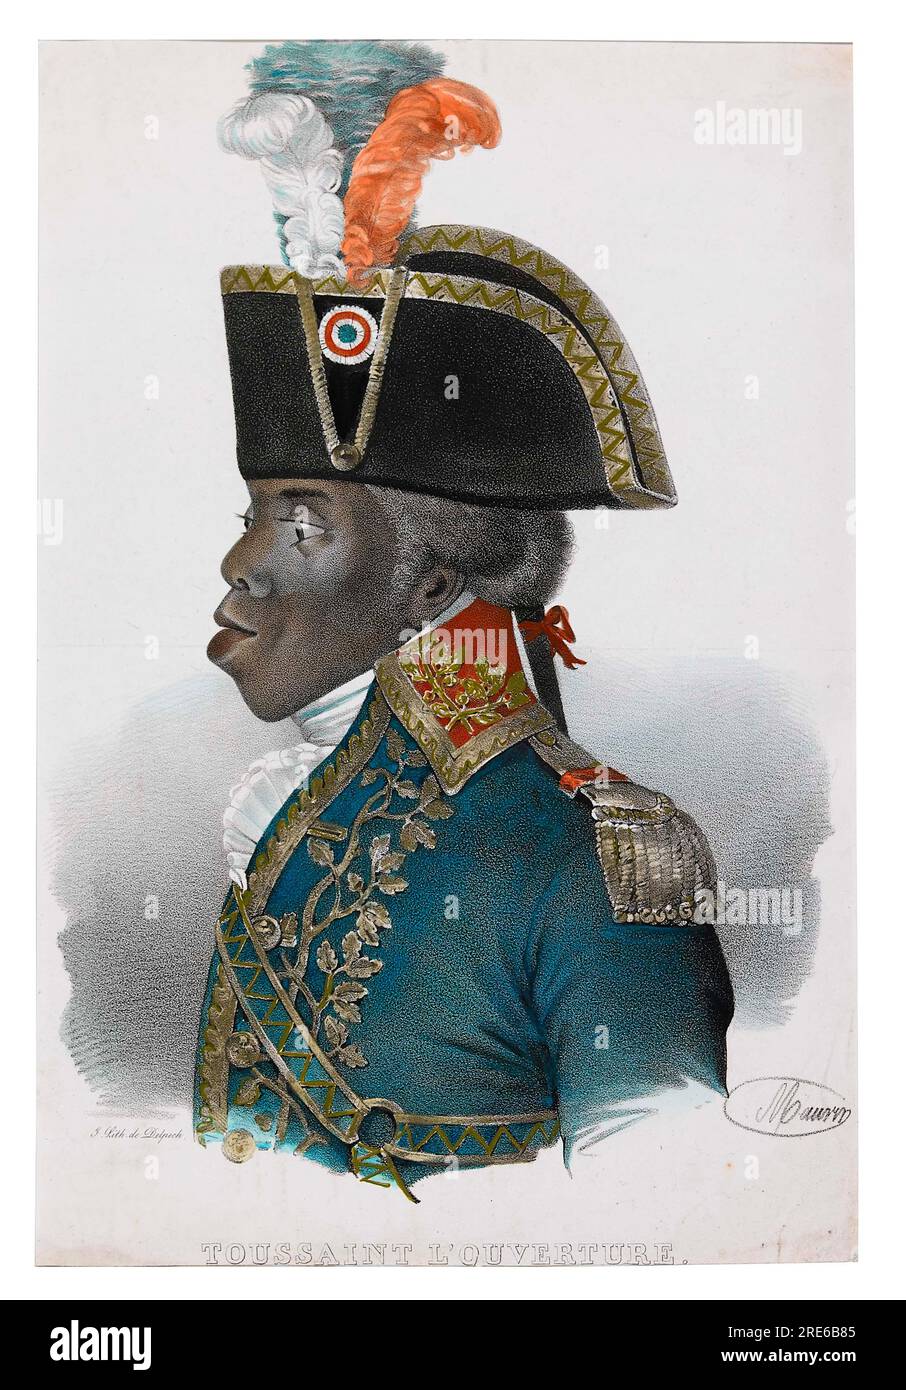 Titel: Toussaint L'Ouverture Künstler: Francois Séraphin Delpech Datum: Nicht angegeben Abmessungen: Nicht angegeben Medium: Handfarbige Lithographien Ort: Nicht angegeben Stockfoto